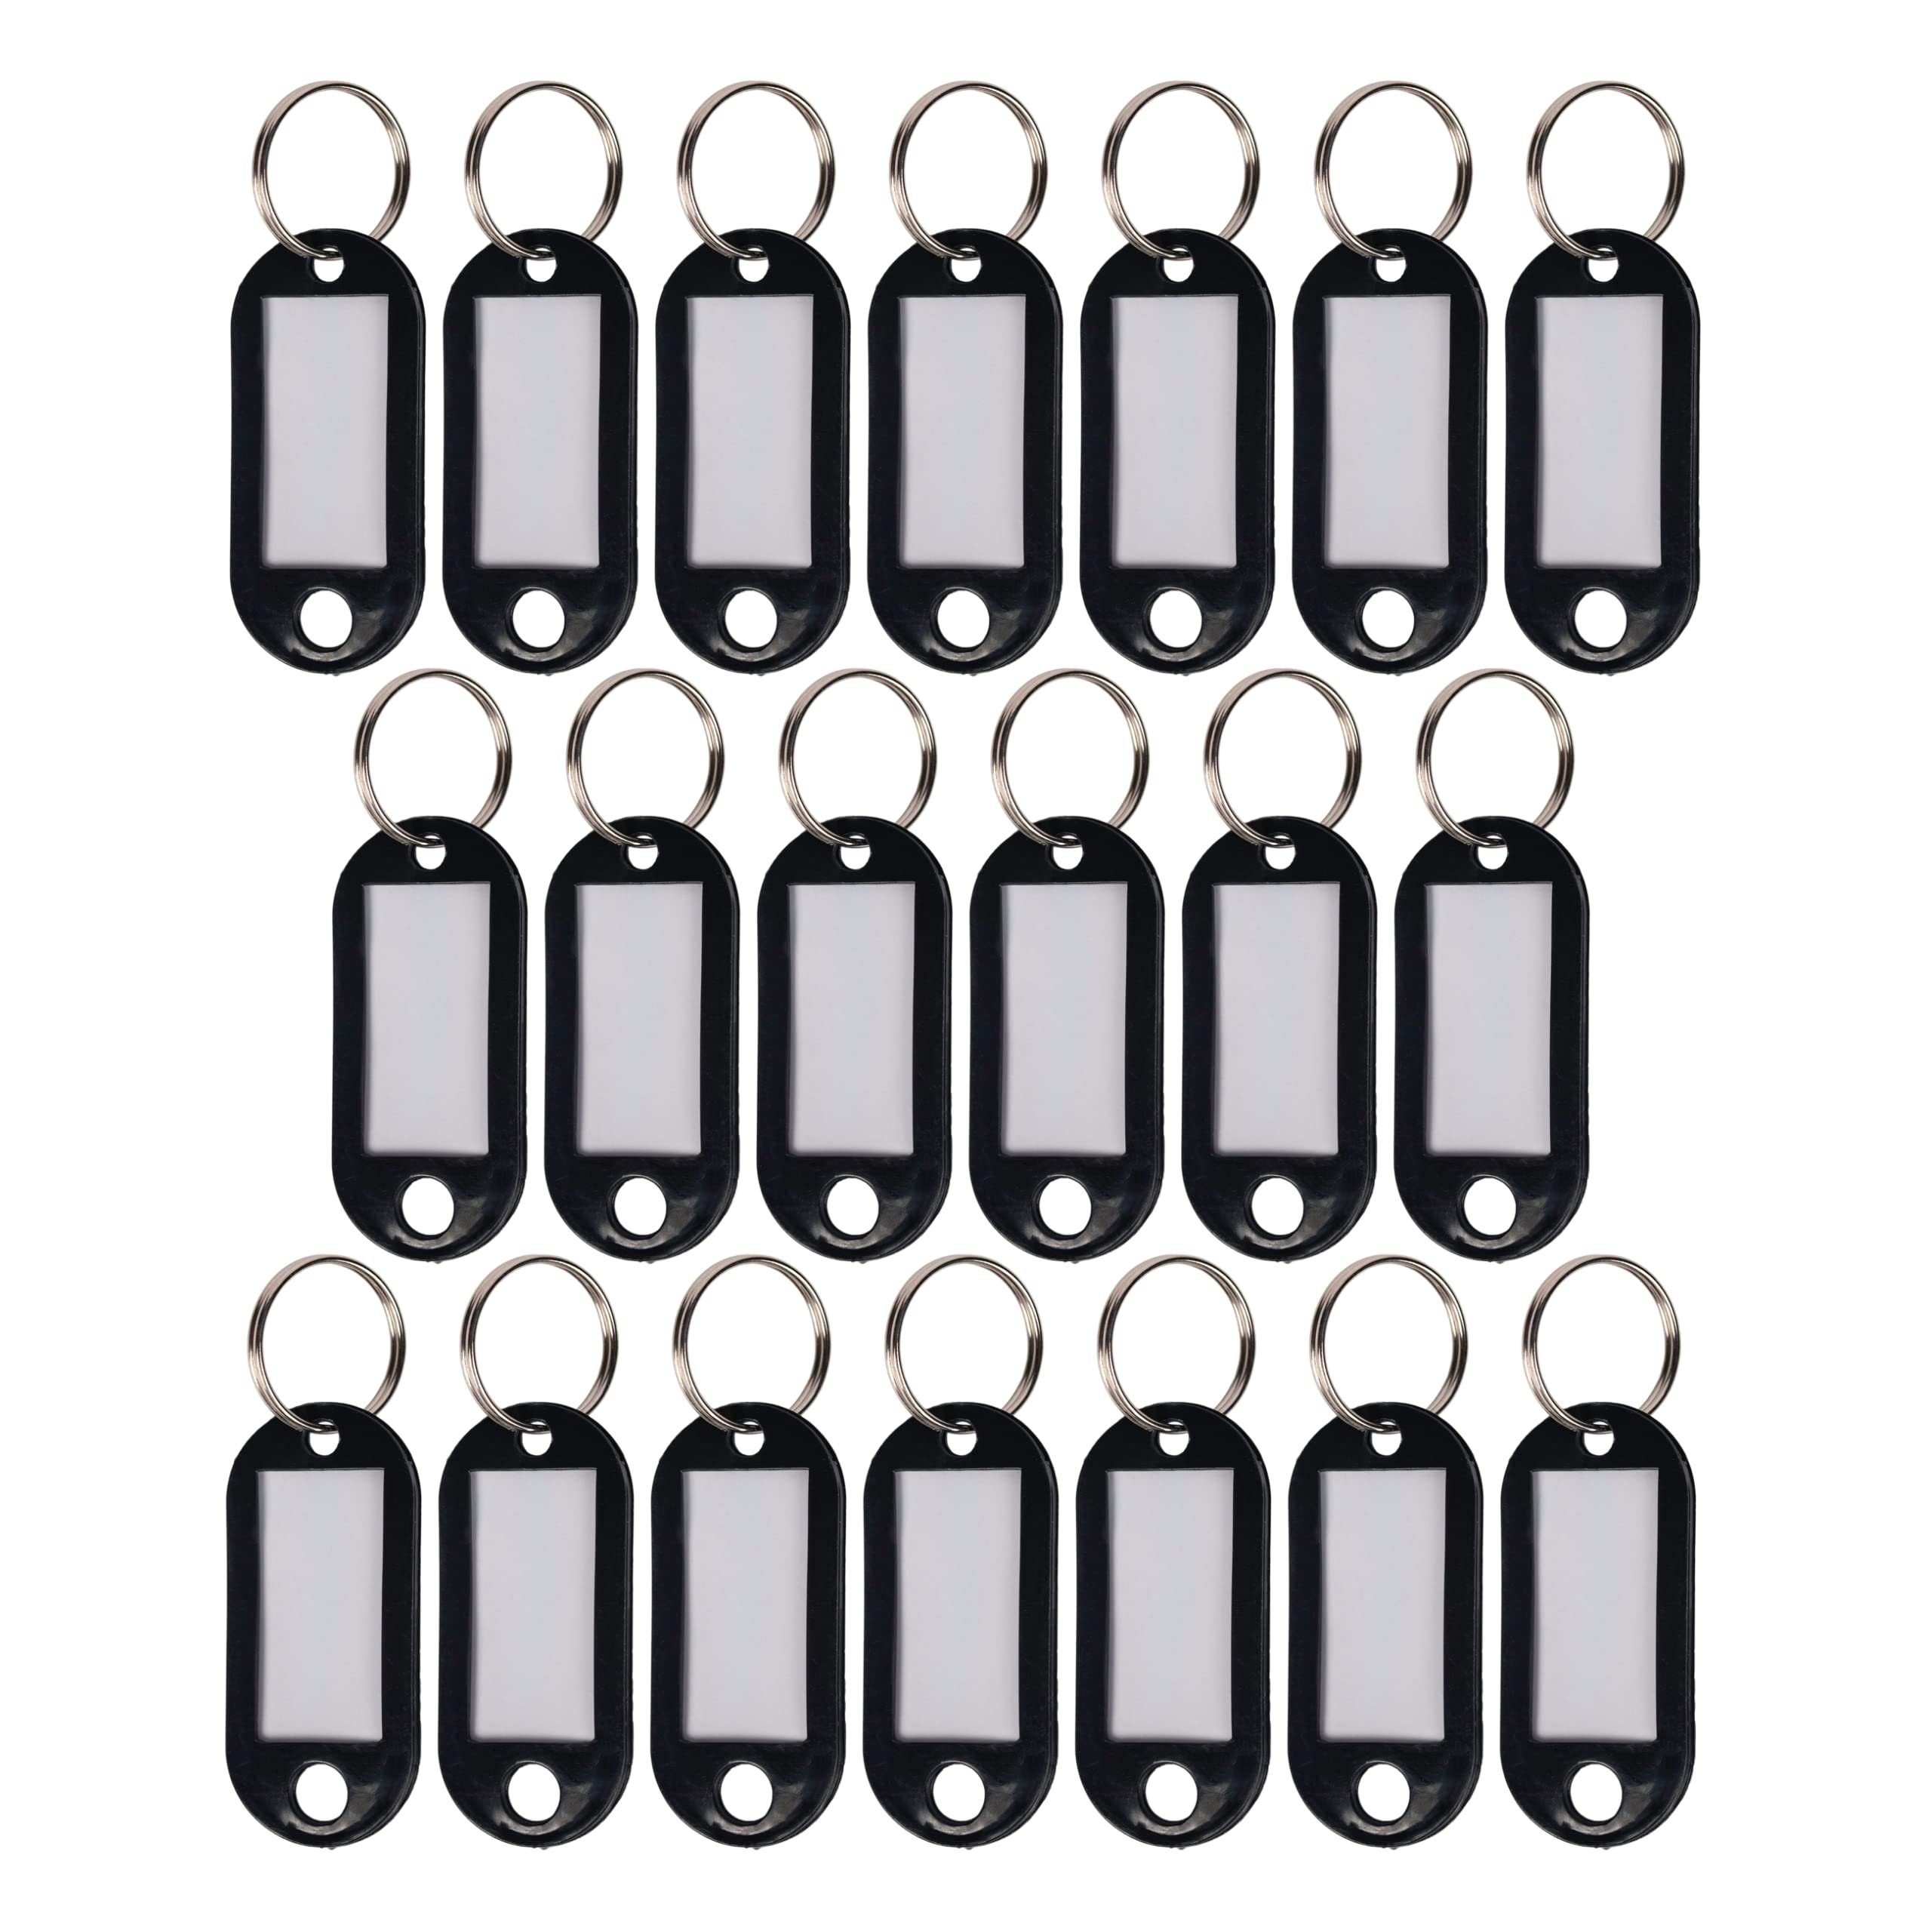 WINTEX Schlüsselanhänger 20x mit Schwarze Wintex Schlüsselanhänger beschriftbar - Etiketten